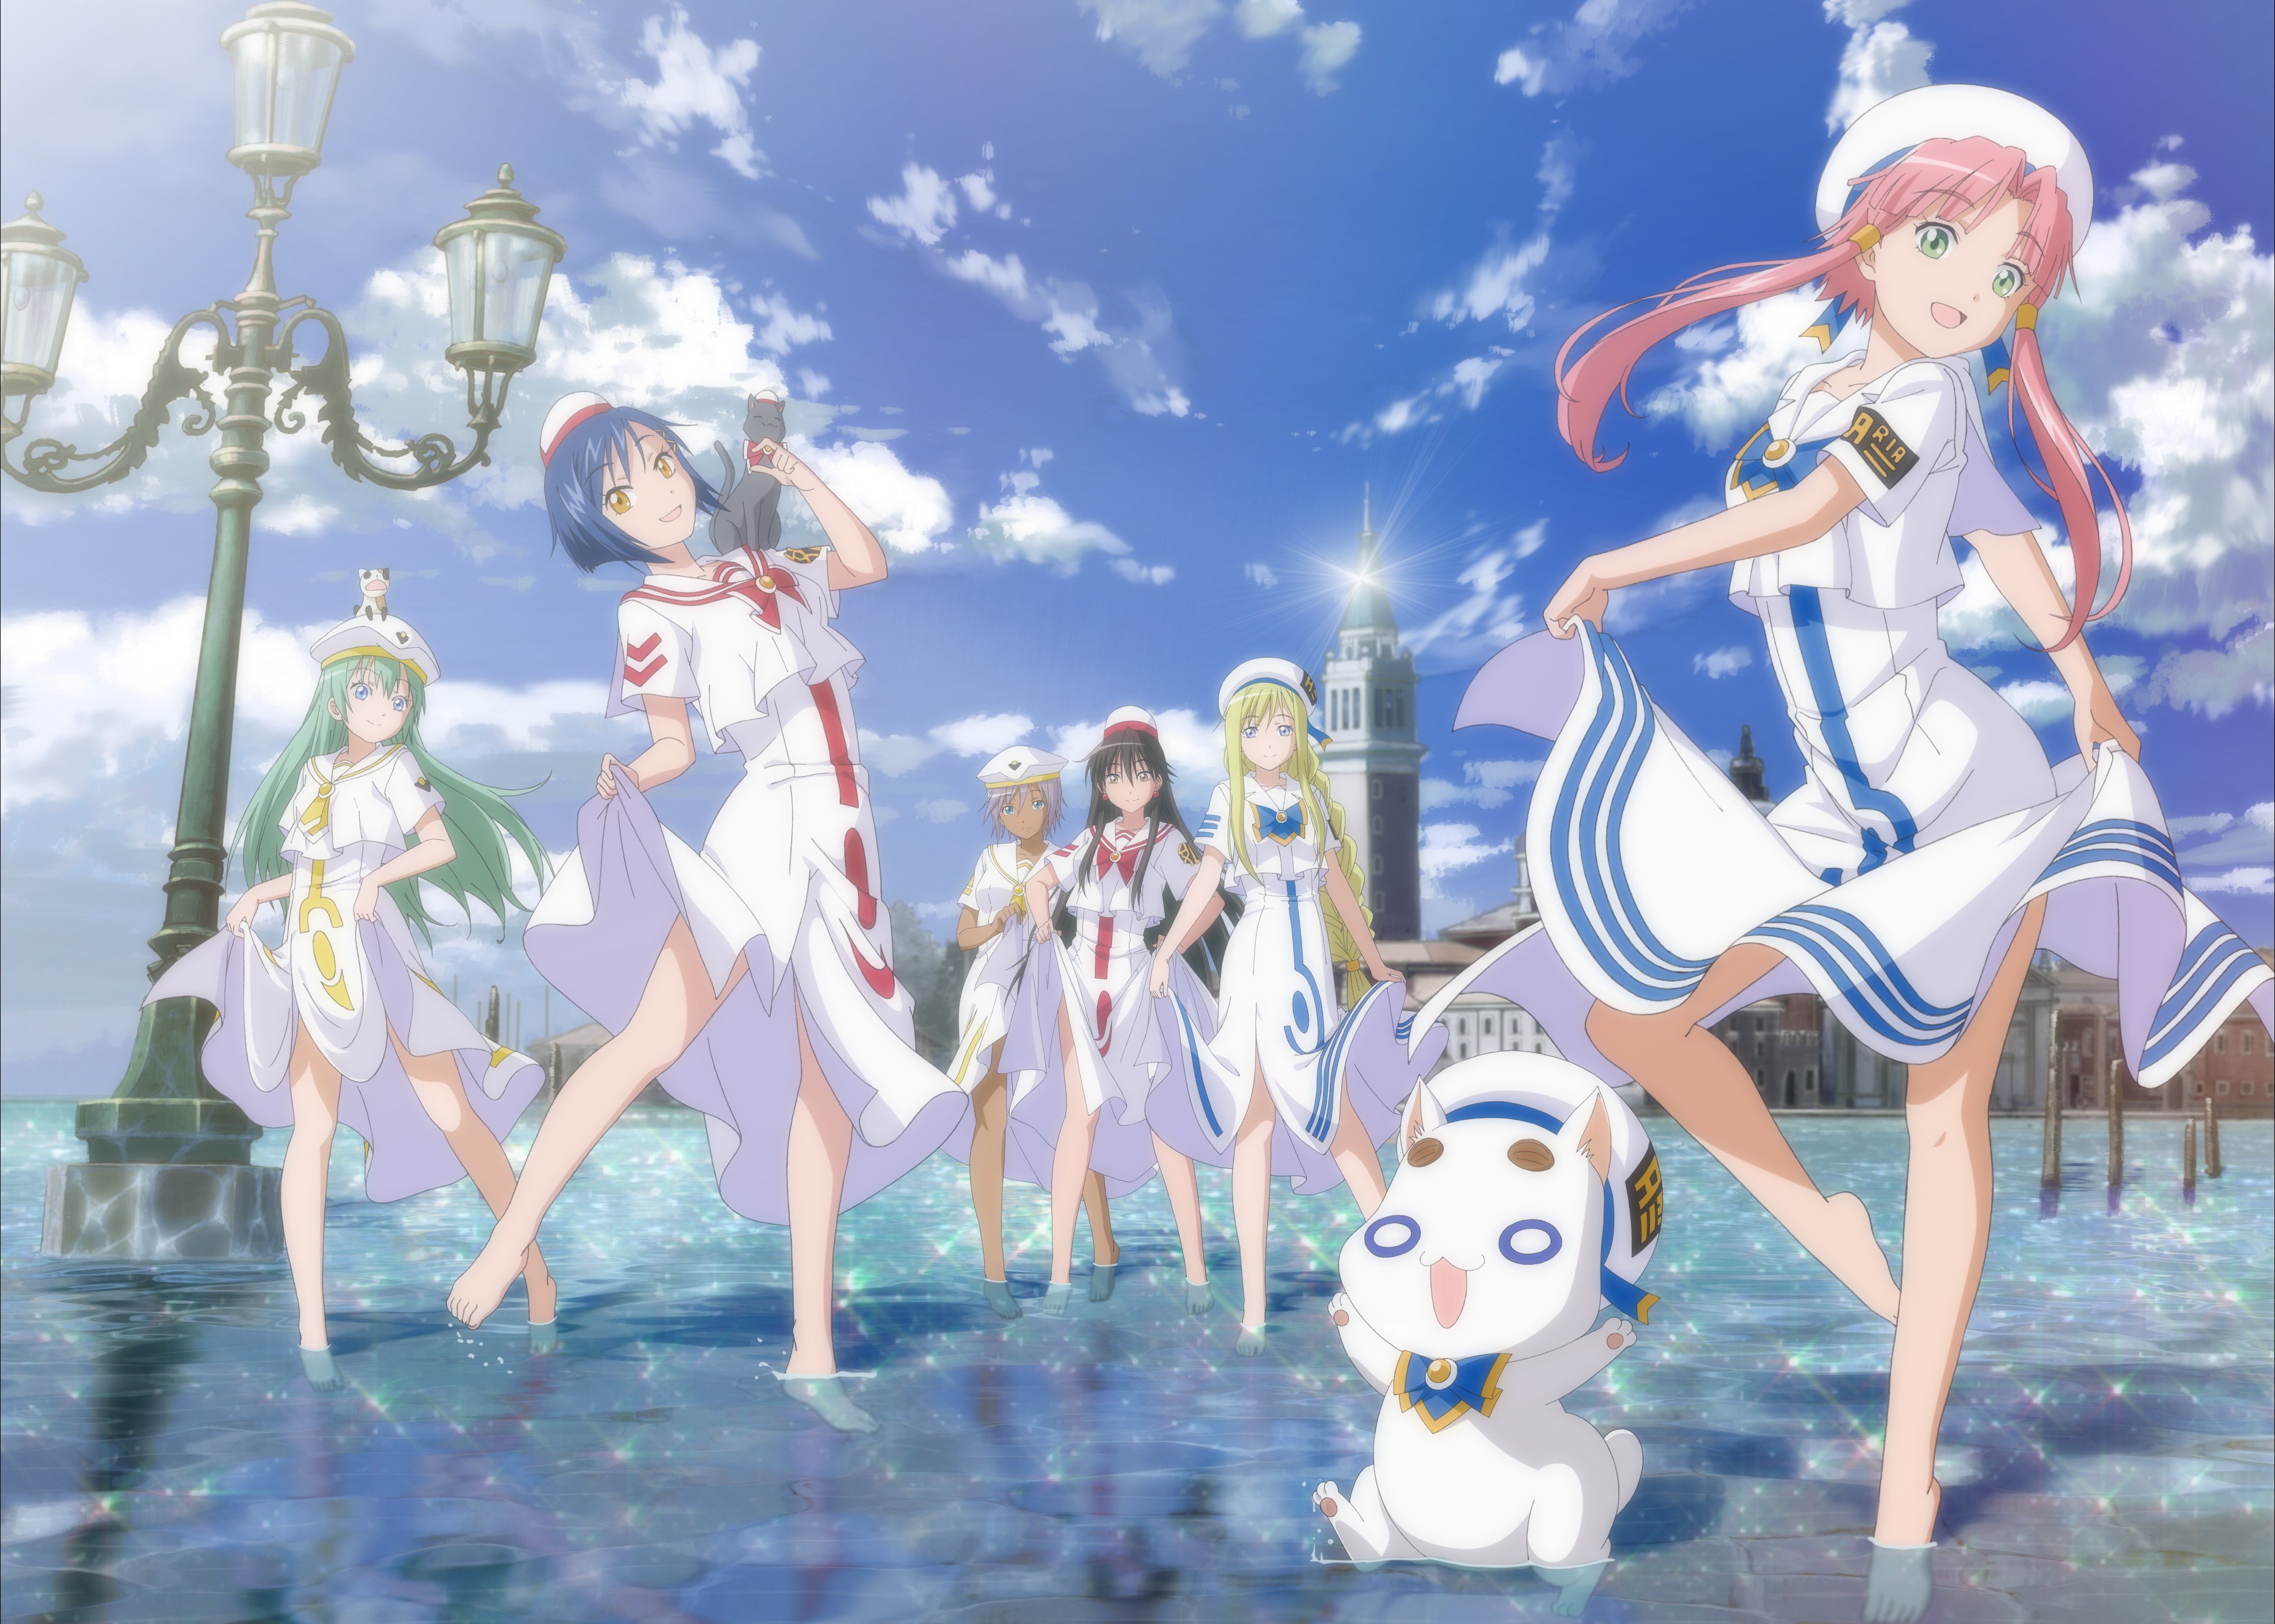 Aria Group Of Women Anime Girls Uniform Standing In Water Water Mizunashi Akari Clouds Aika Granzche 3952x2821